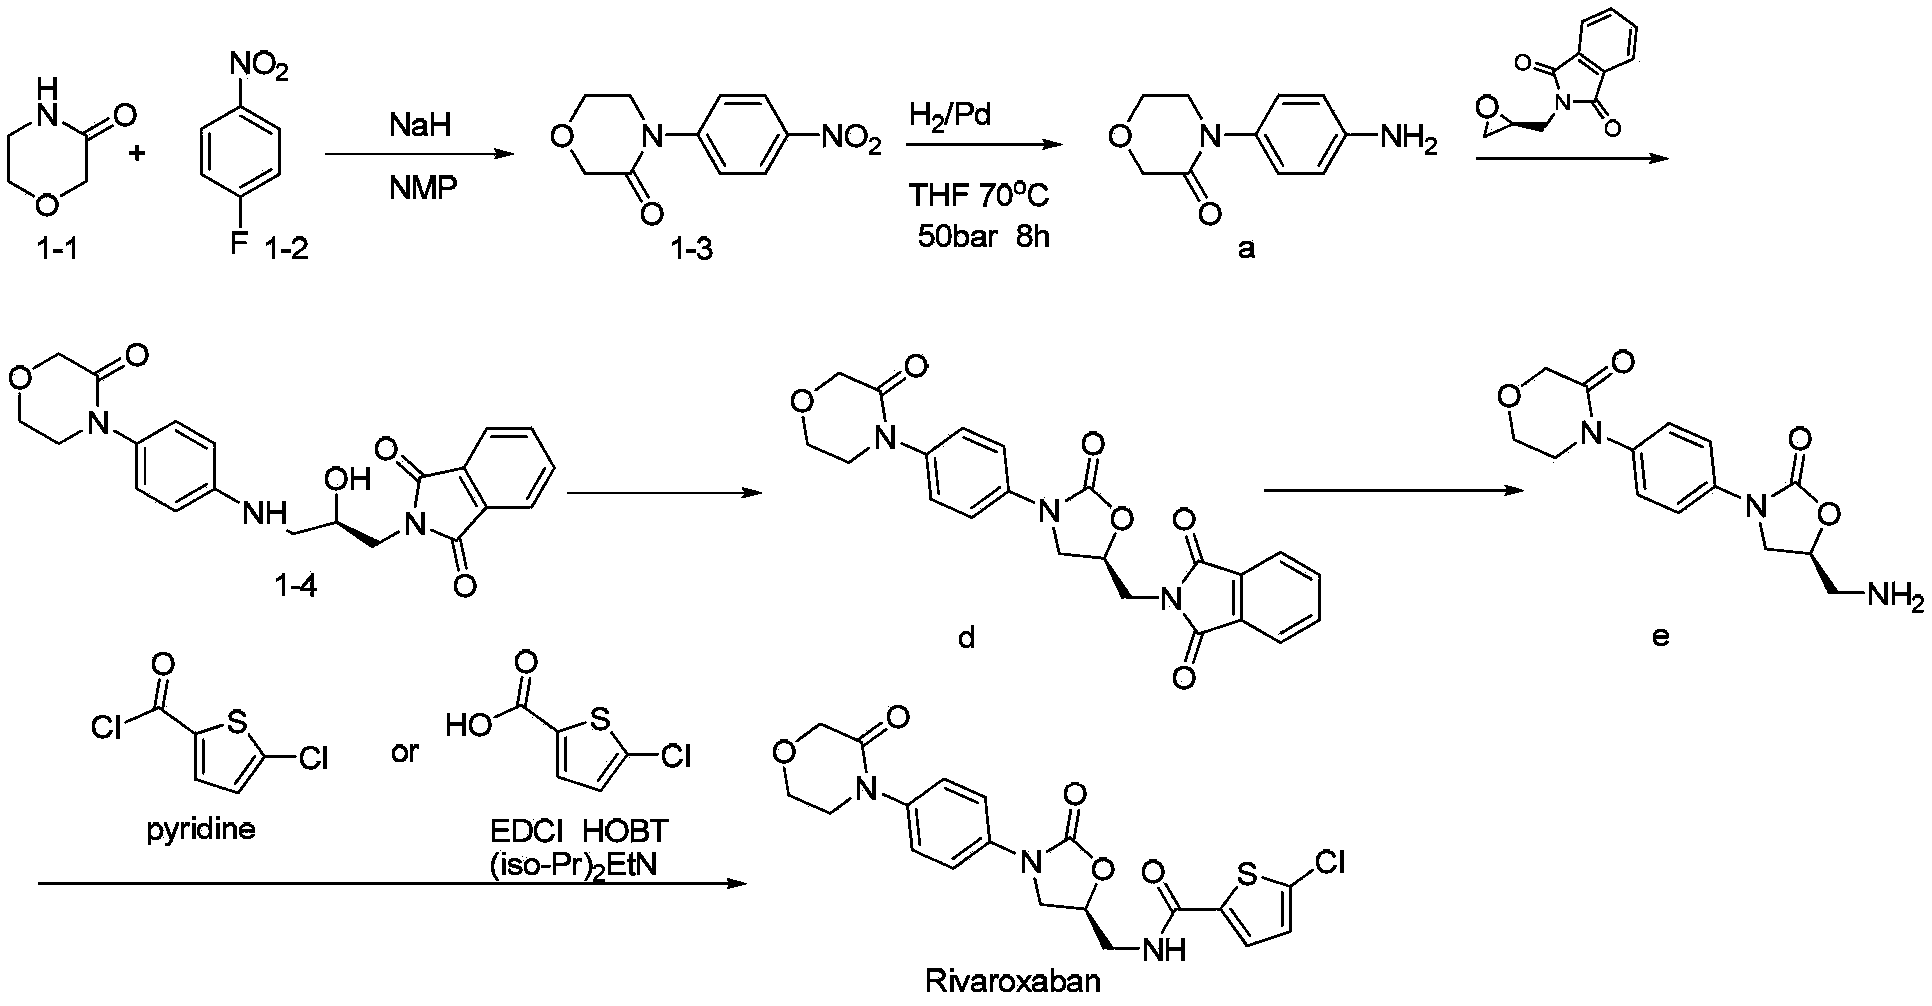 Novel synthetic process for rivaroxaban